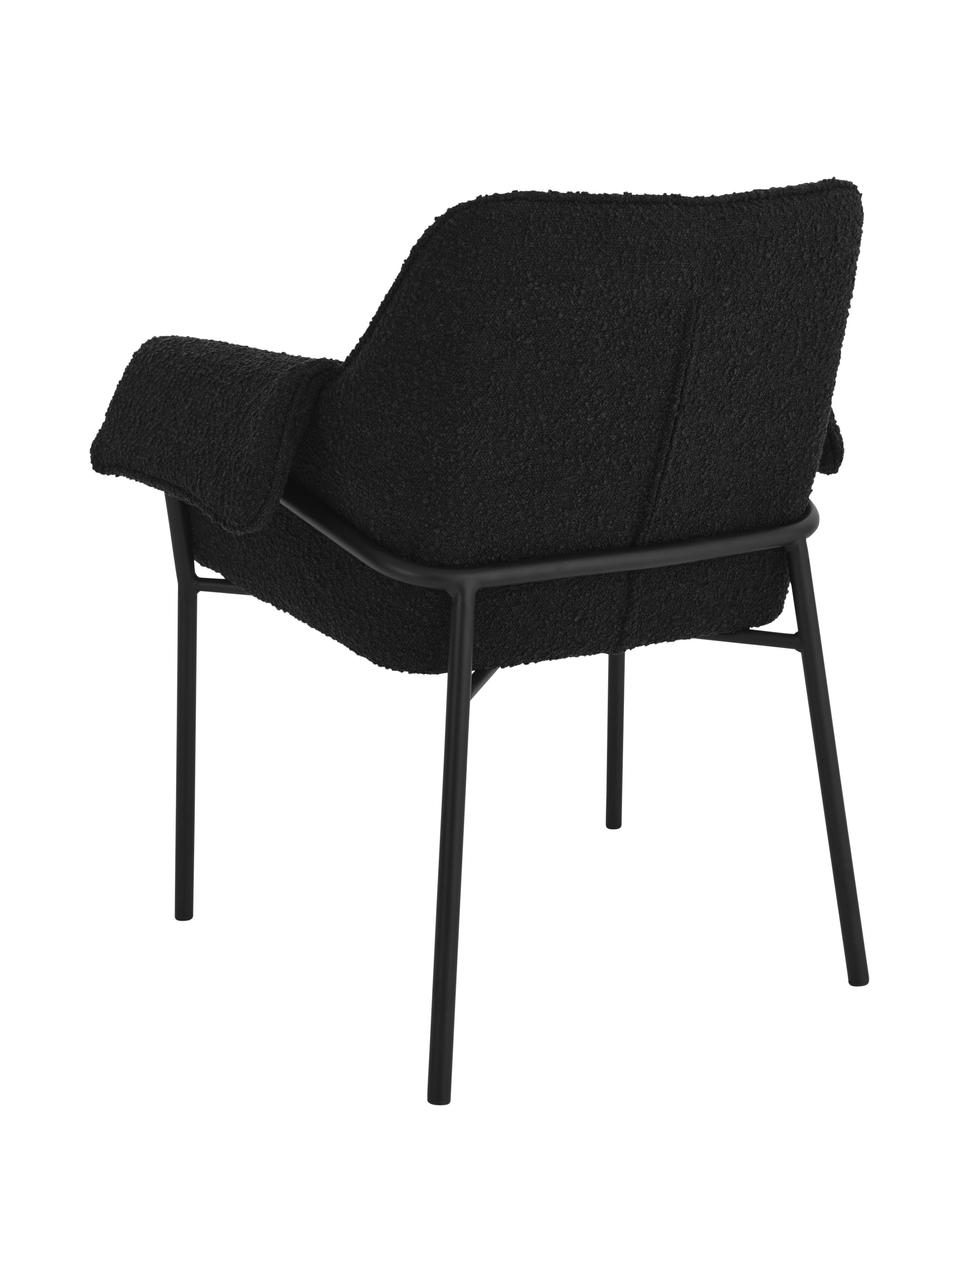 Bouclé fauteuils Effekt in zwart, 2 stuks, Bekleding: 100% polyester, Poten: gecoat metaal, Bouclé zwart, B 73 cm x D 54 cm